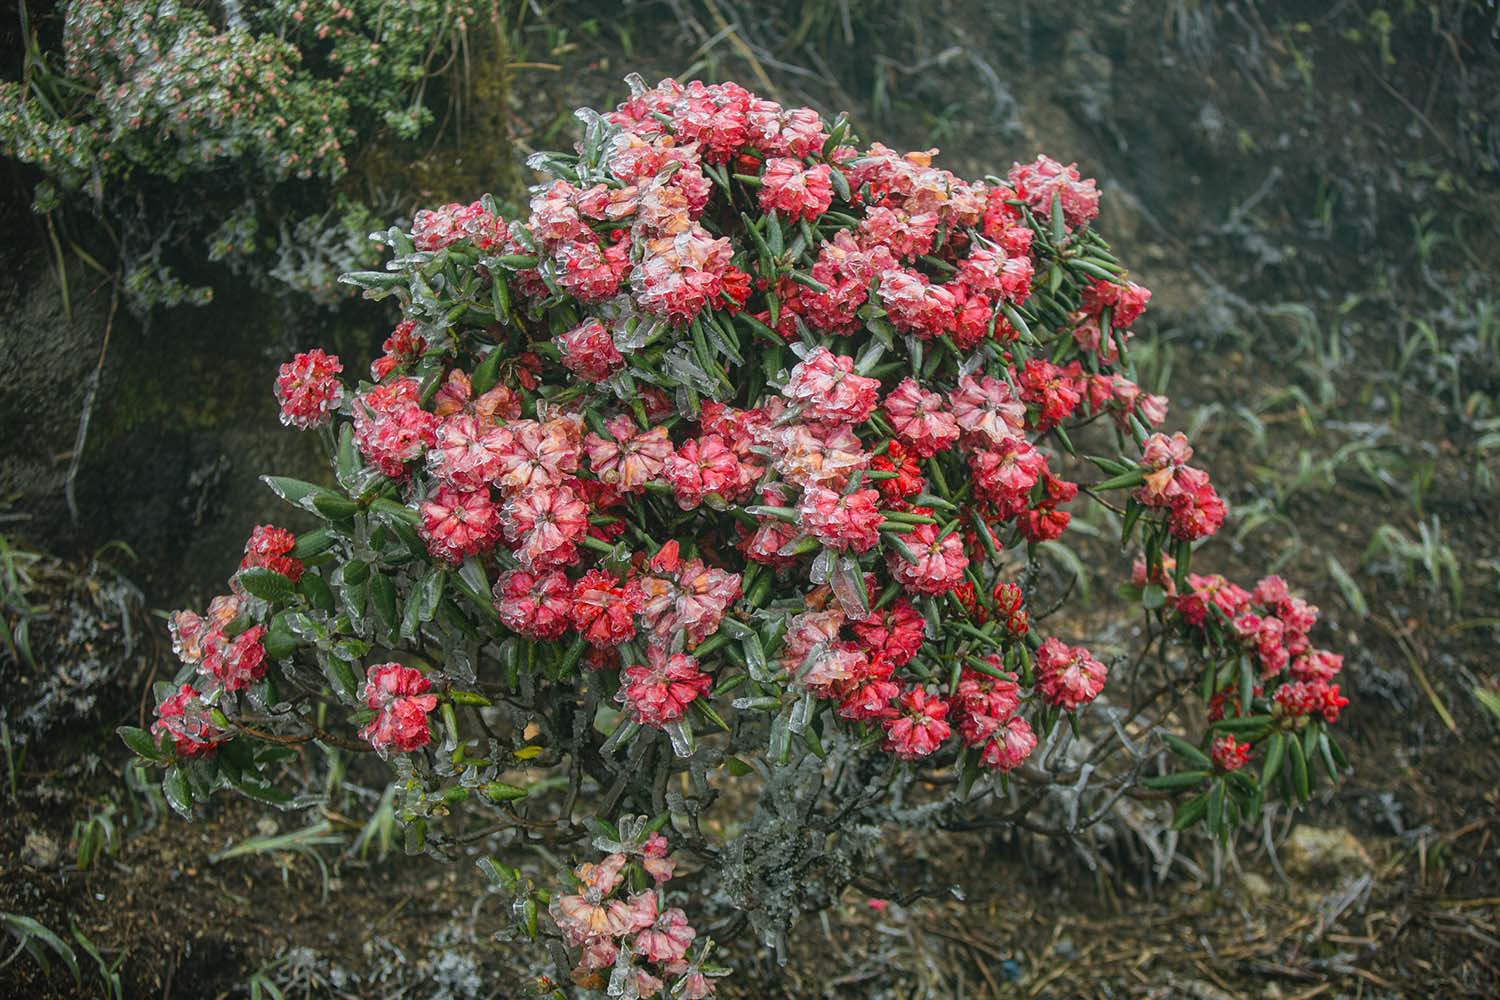 Mùa này, hoa đỗ quyên đỏ-giống hoa quý nhất trong hơn 40 loài đỗ quyên của núi rừng Hoàng Liên và đỗ quyên vàng, tím… đang nở những chùm rực rỡ trên khu vực đỉnh. Băng giá bao phủ lên những bông đỗ quyên, tạo nên những bông hoa băng đẹp như cổ tích.